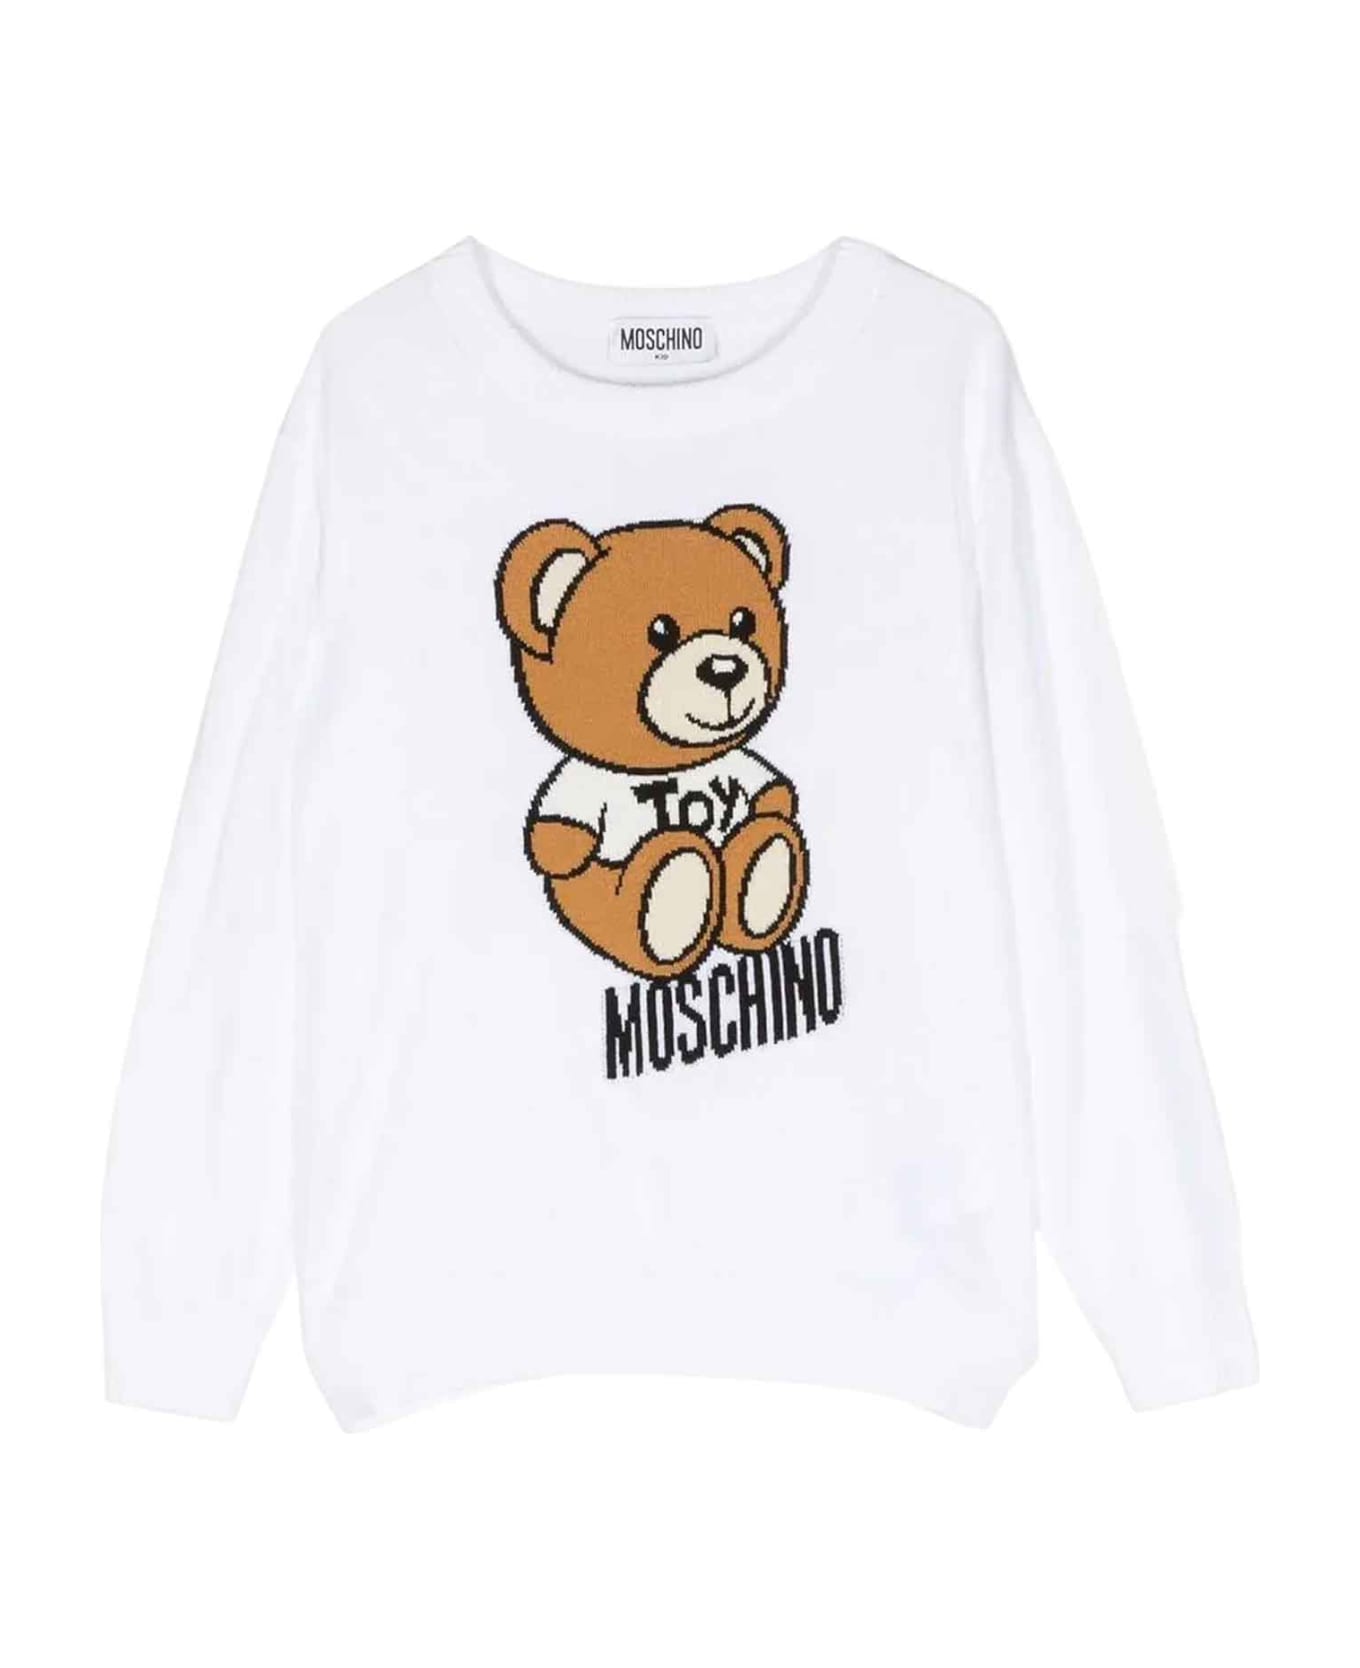 Moschino White Sweater Unisex - Bianco